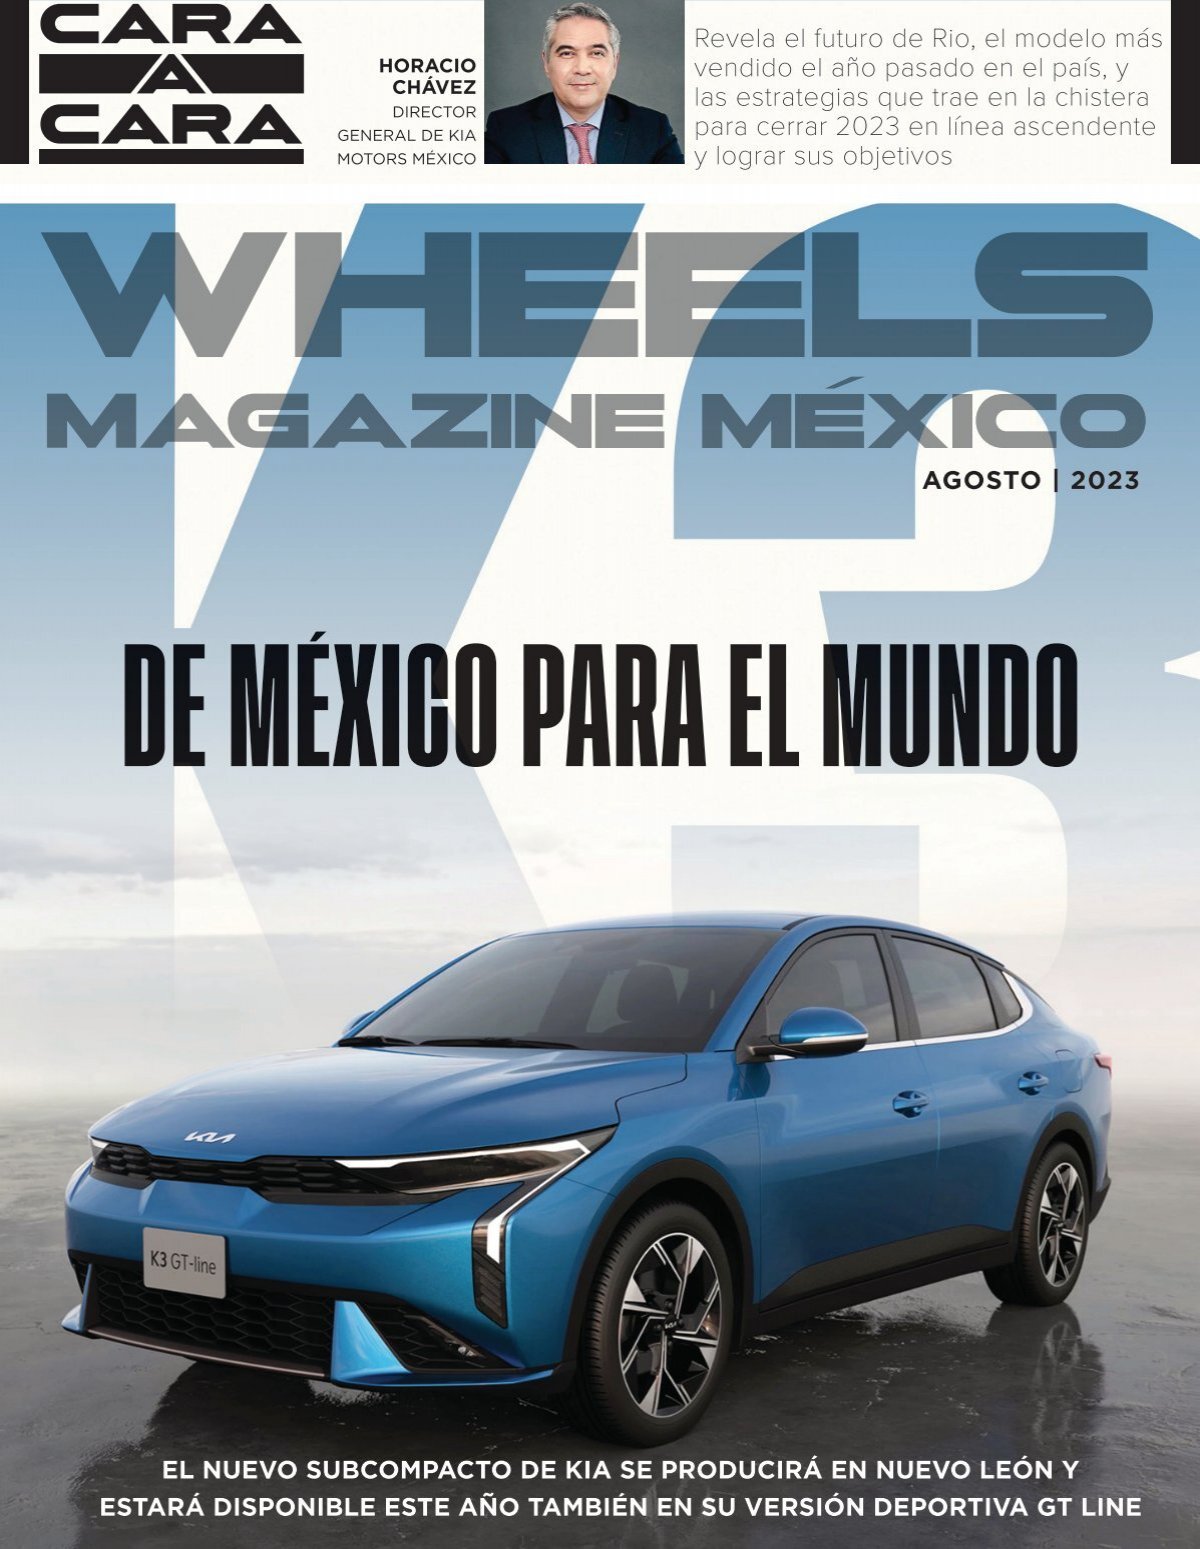 SEAT León 2021: Características y fecha de lanzamiento en México